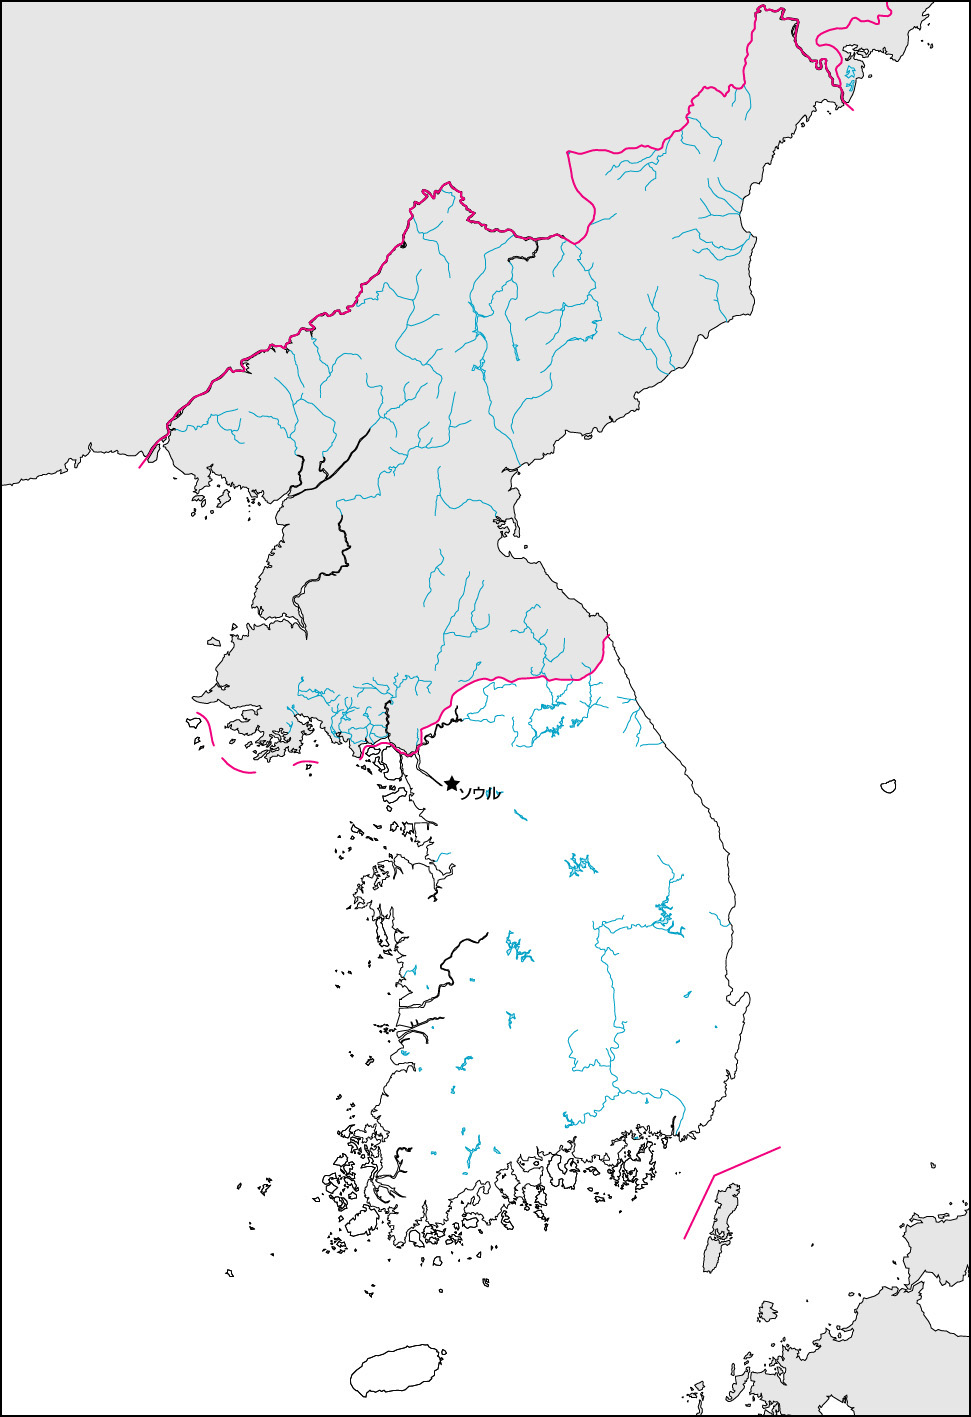 韓国白地図(首都・国境記載)の画像